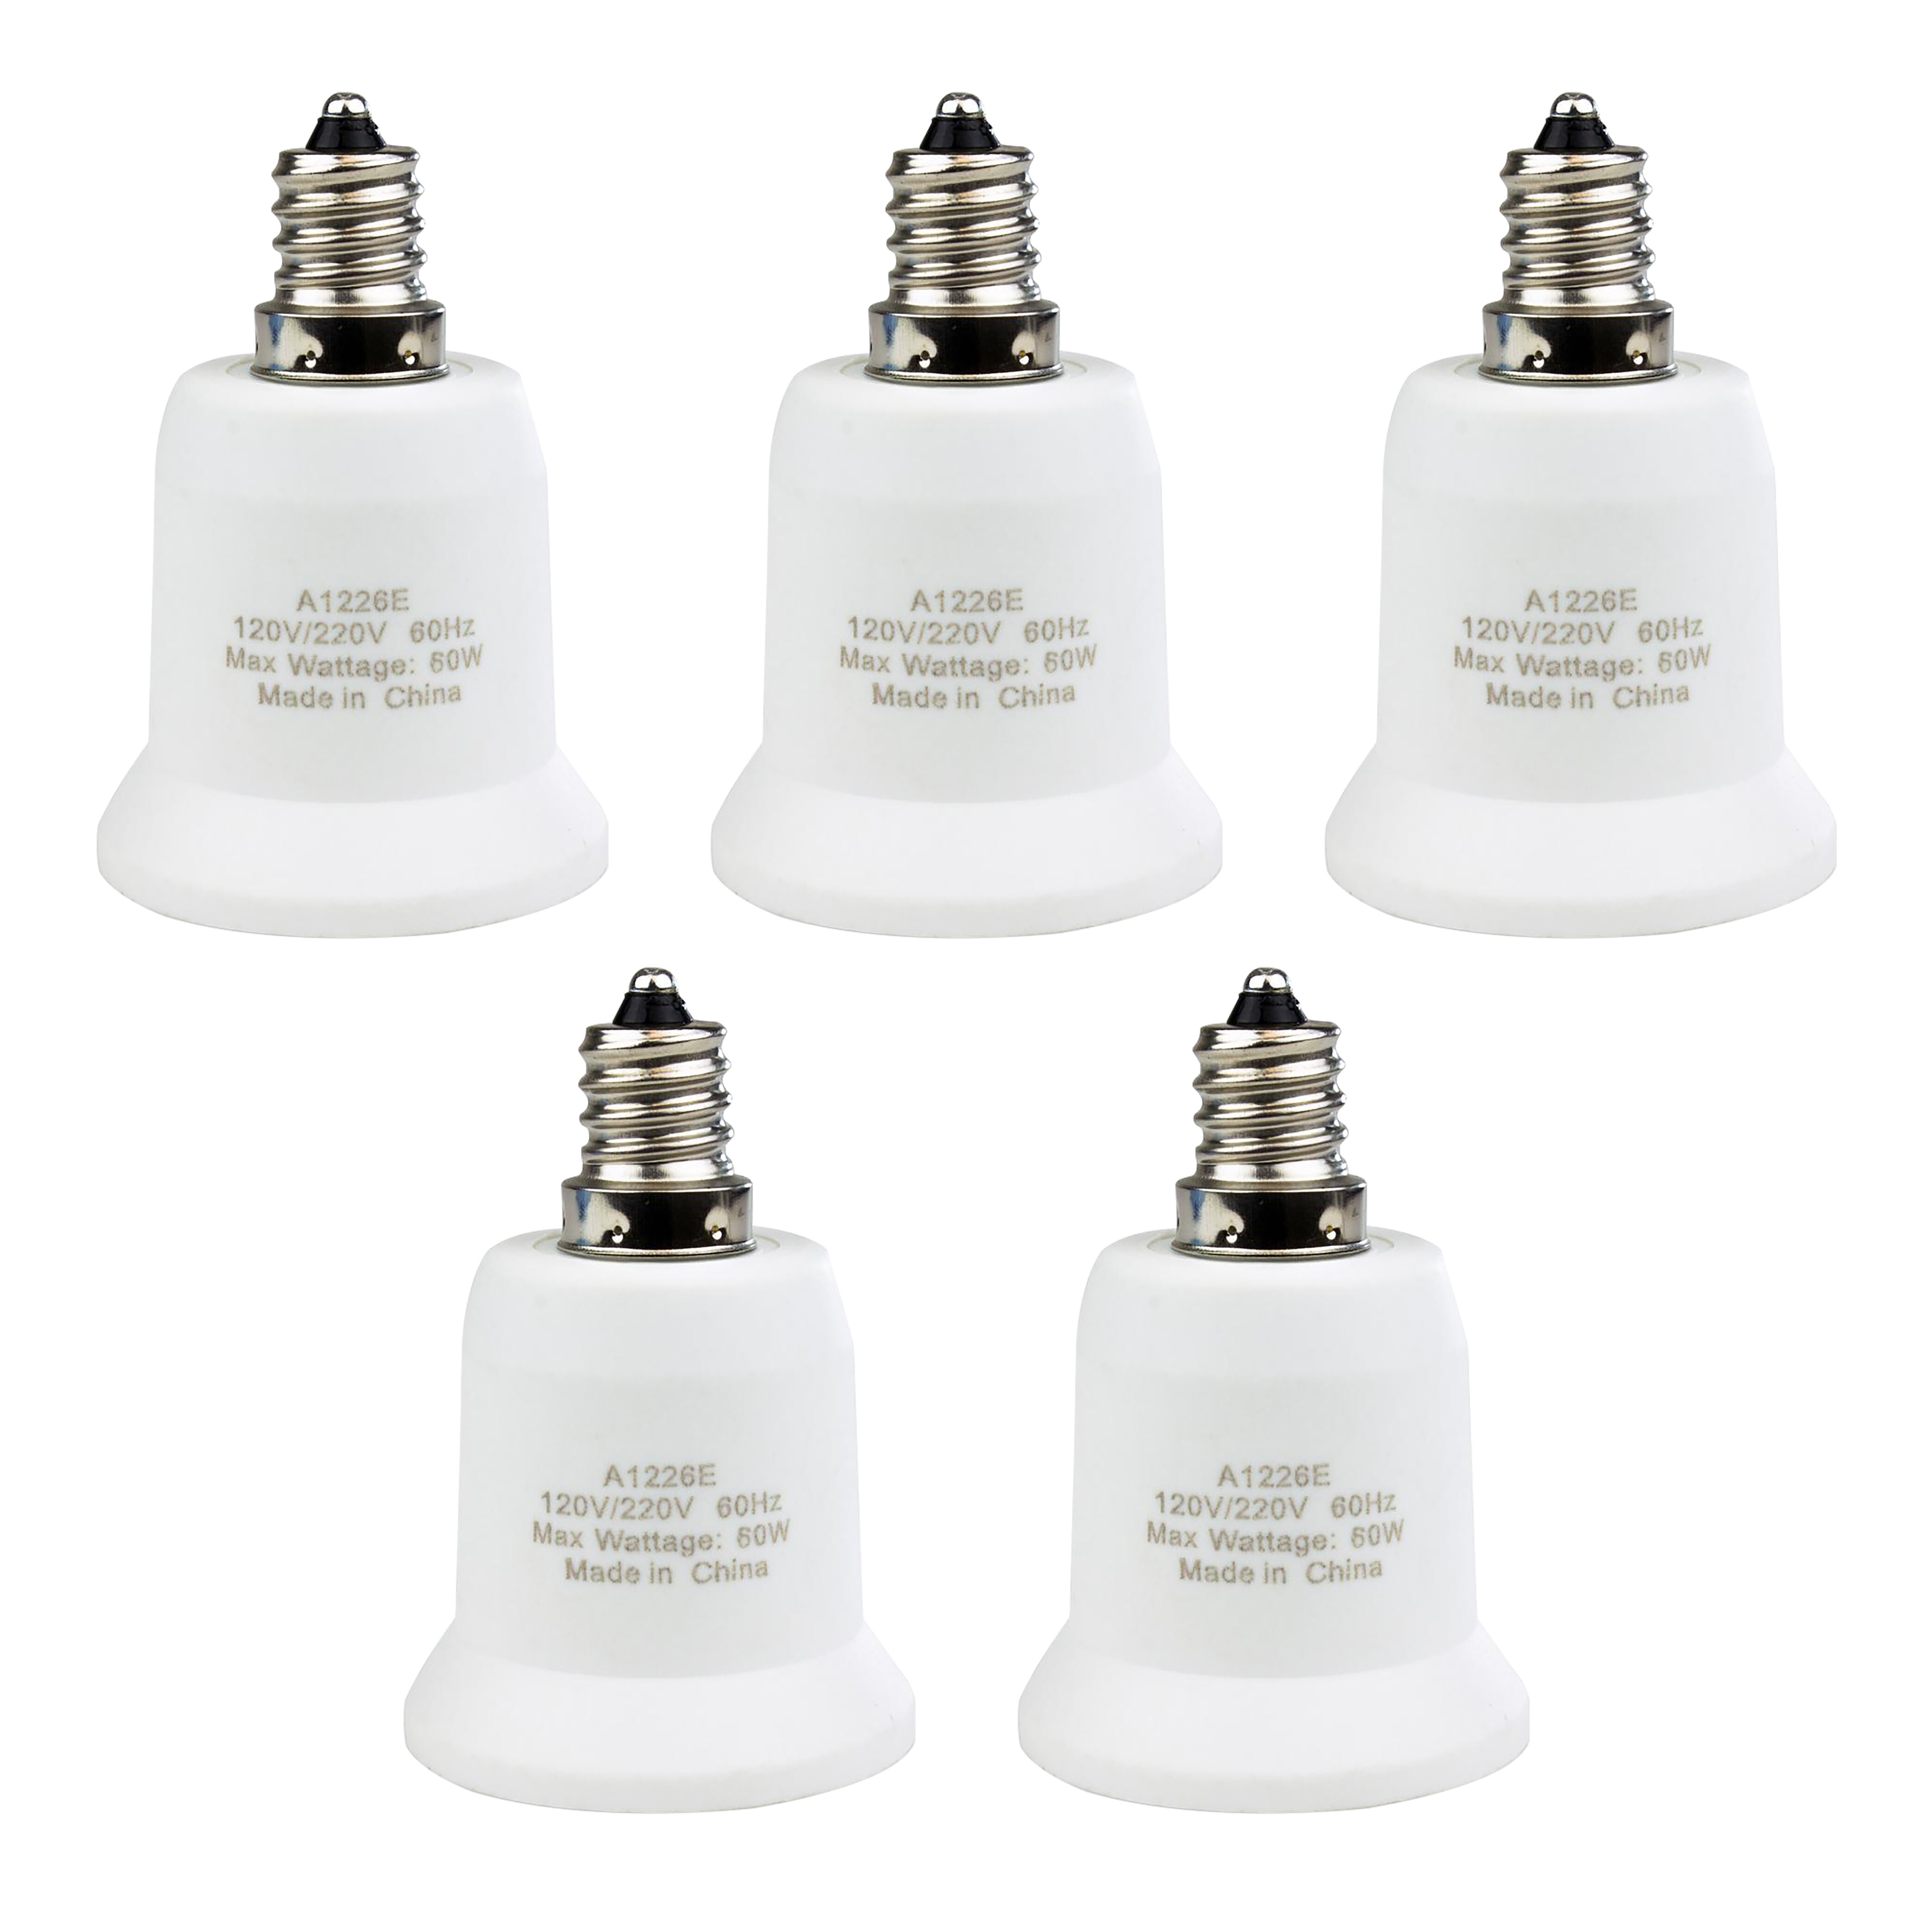 Light Bulb Adapter Candelabra To Standard Base Socket Converter For Ceiling Fan 